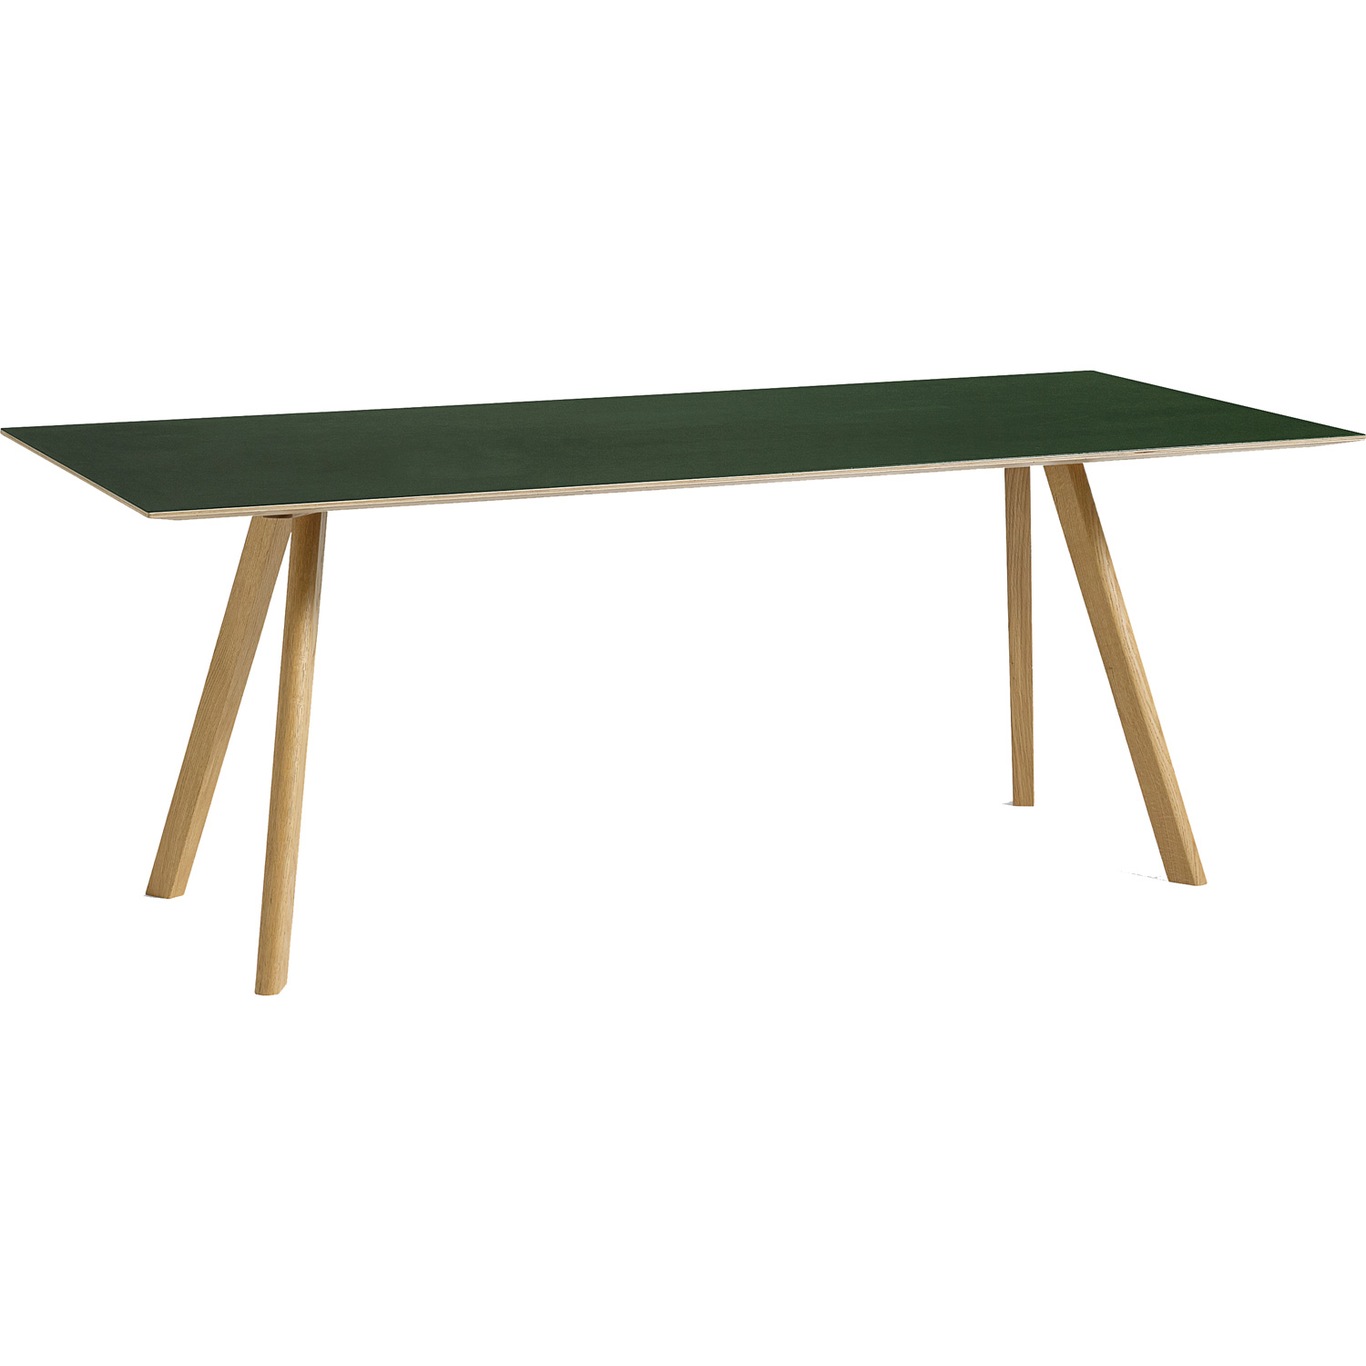 CPH30 Tisch 90x200 cm, Mit Wasserlack Behandelte Eiche/Grün Linoleum